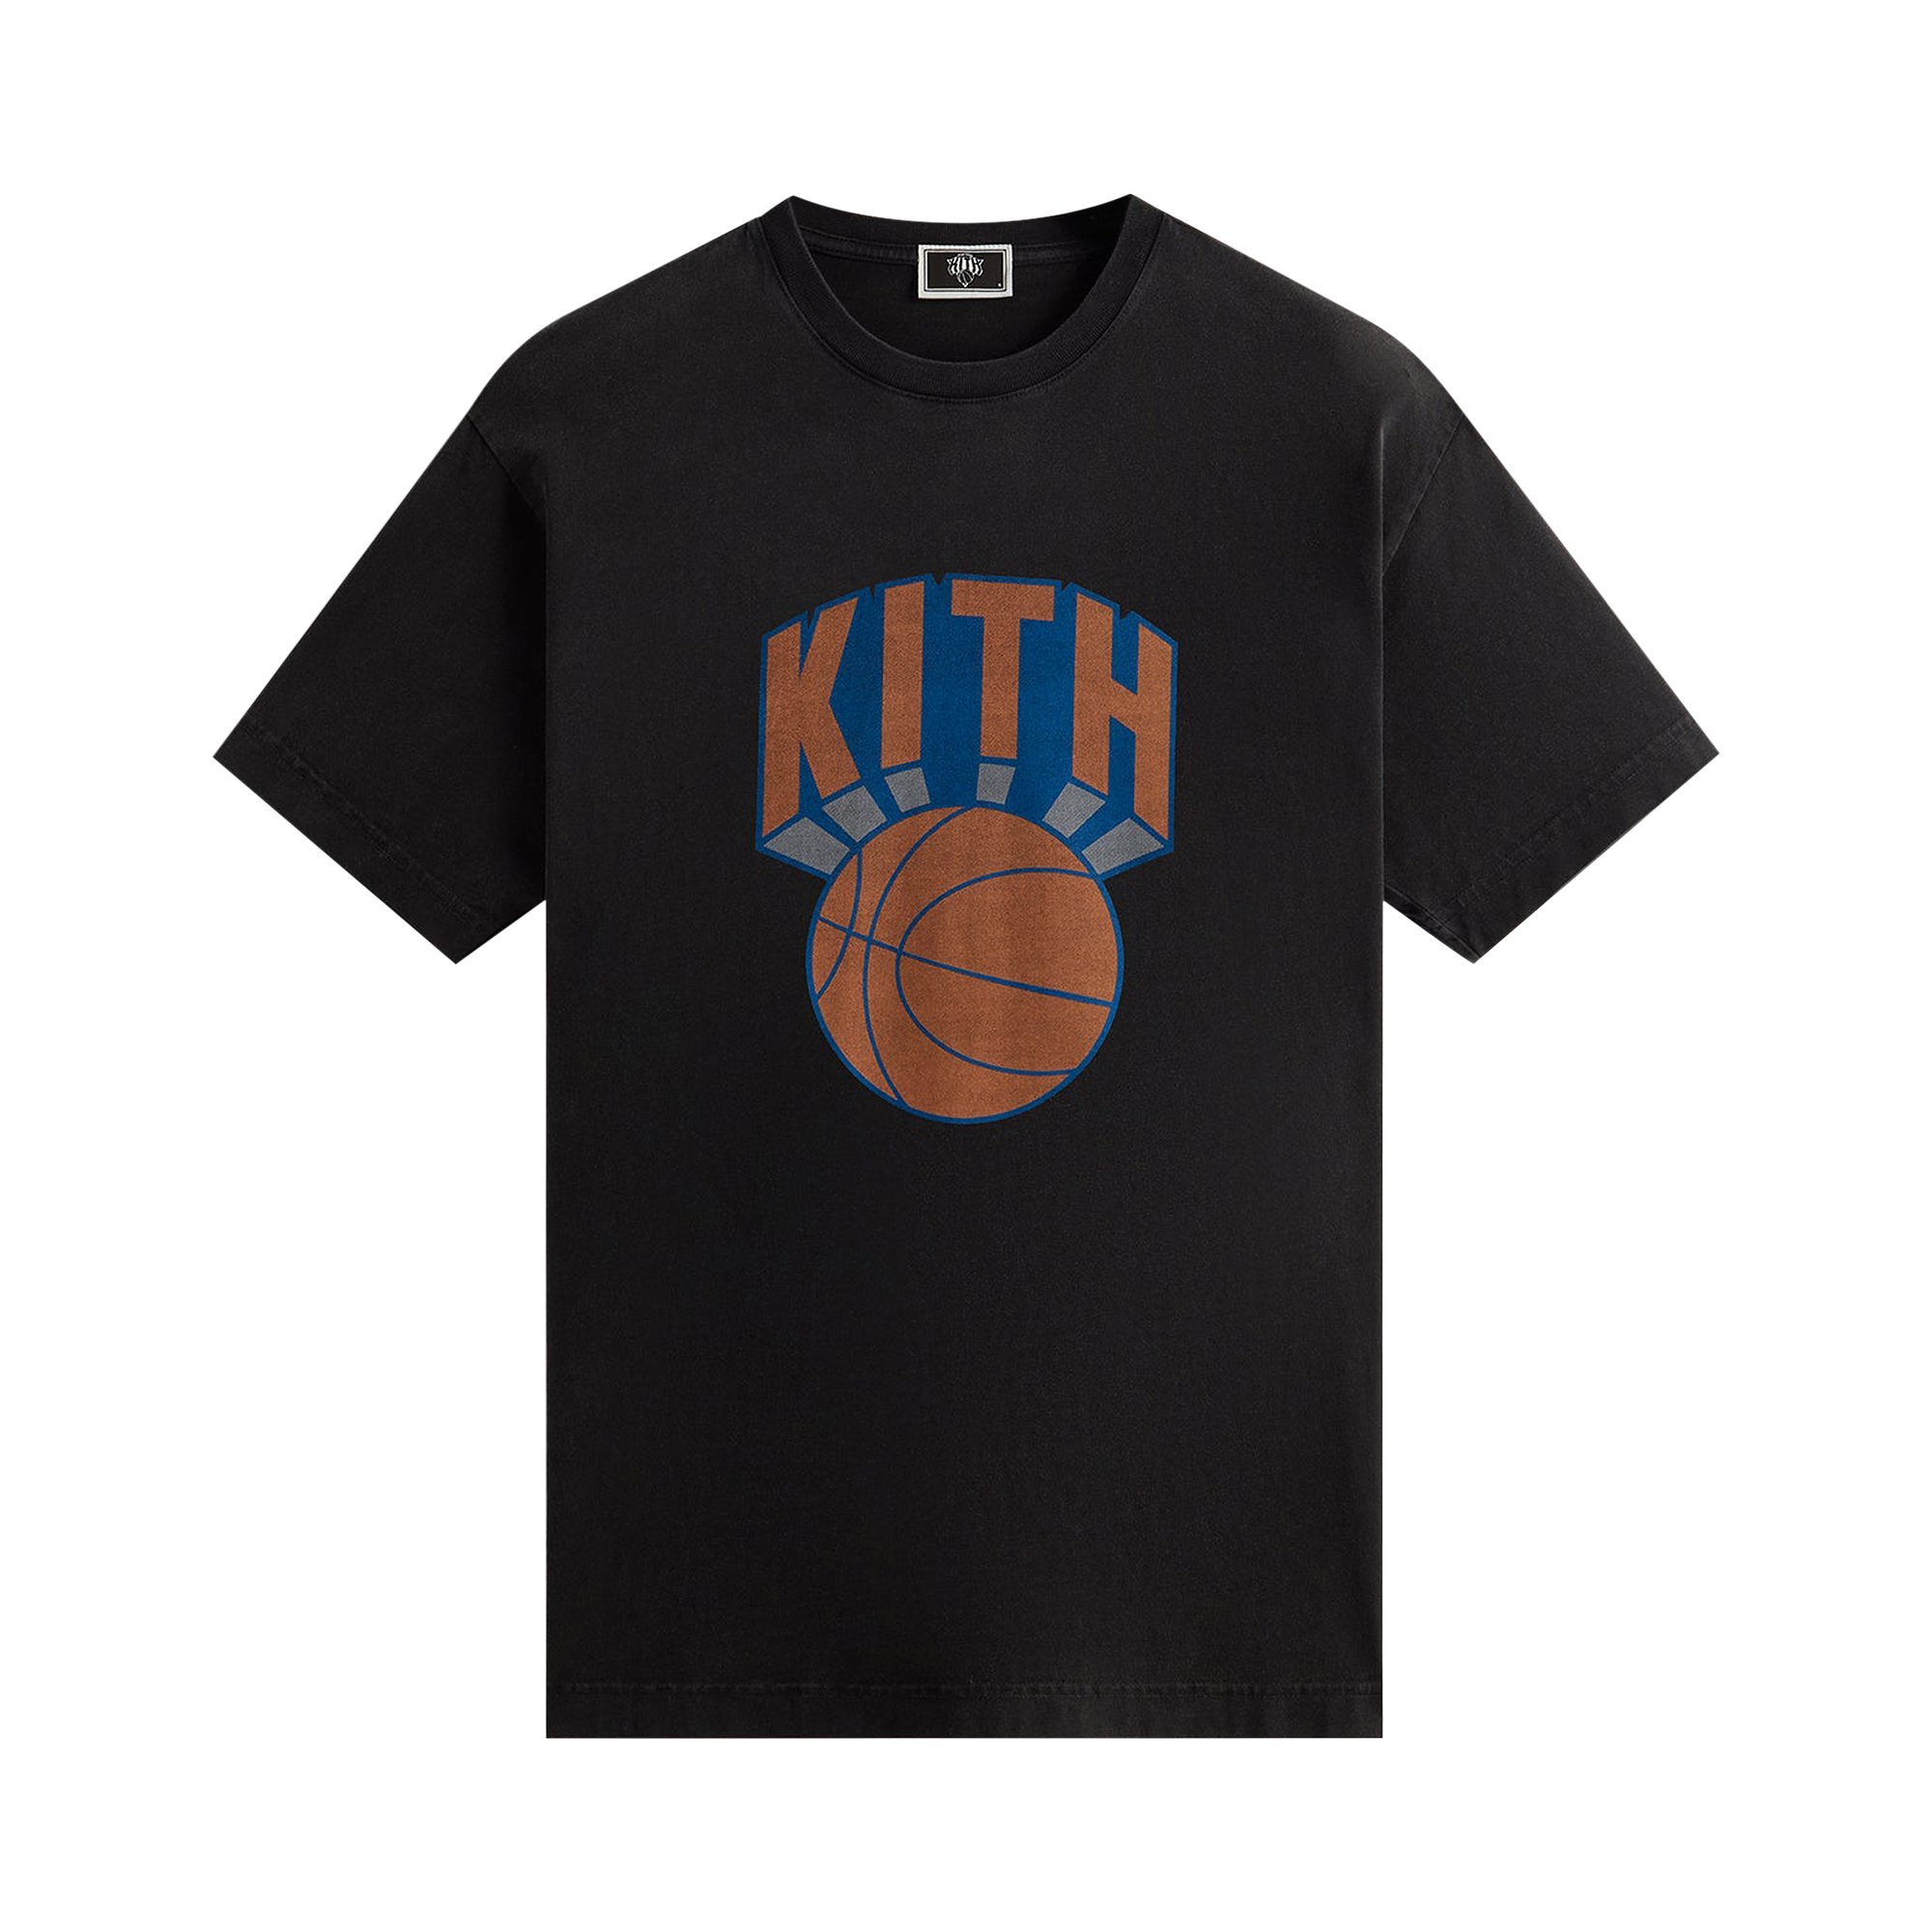 Buy Kith For The New York Knicks Retro NY Vintage Tee 'Black ...